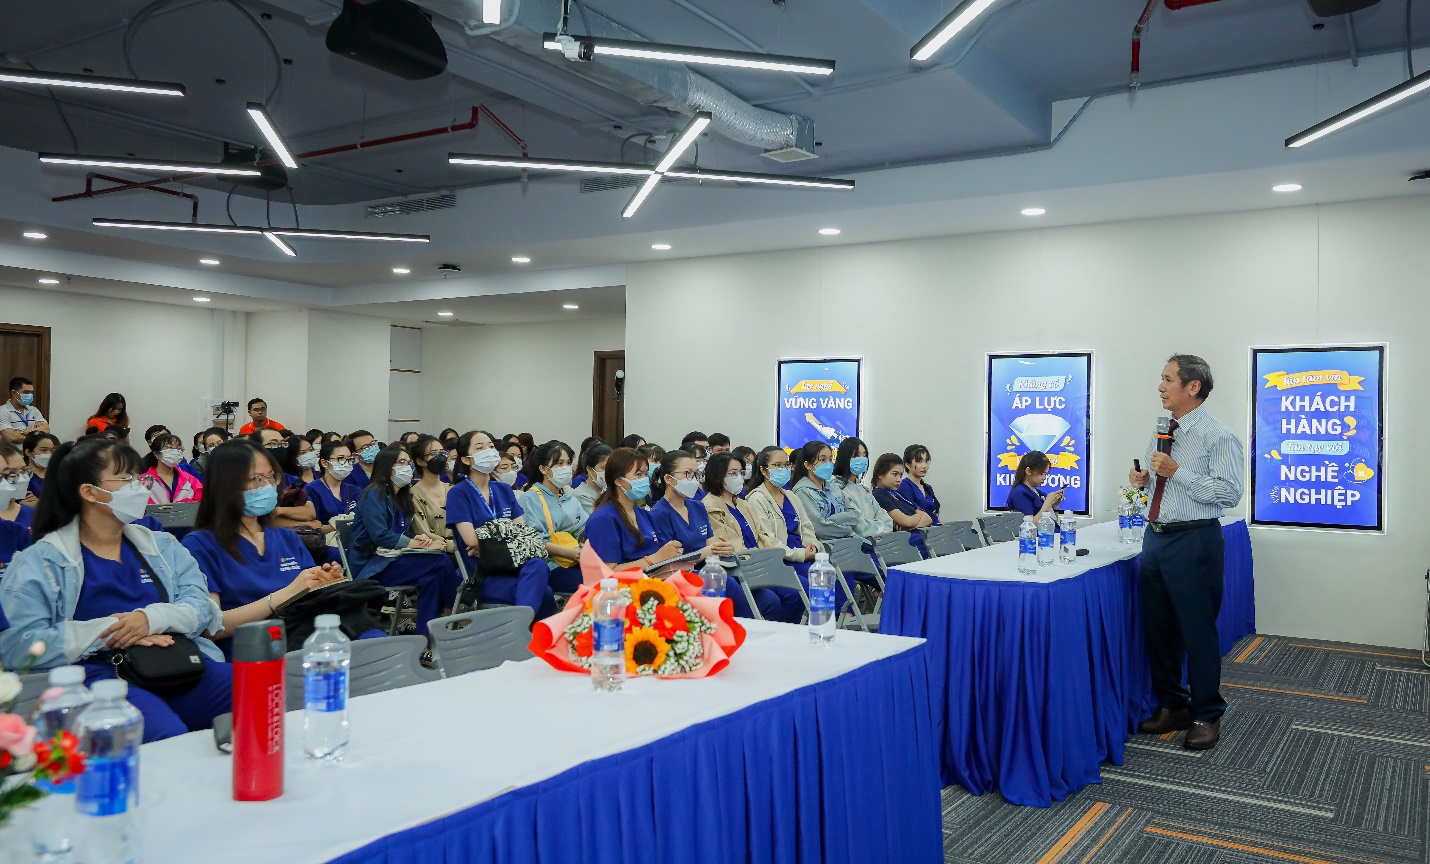 FPT Long Châu cùng GSK Việt Nam tổ chức khóa đào tạo dược sĩ “Pharmacist Master Class” tiên phong tại Việt Nam - ảnh 3